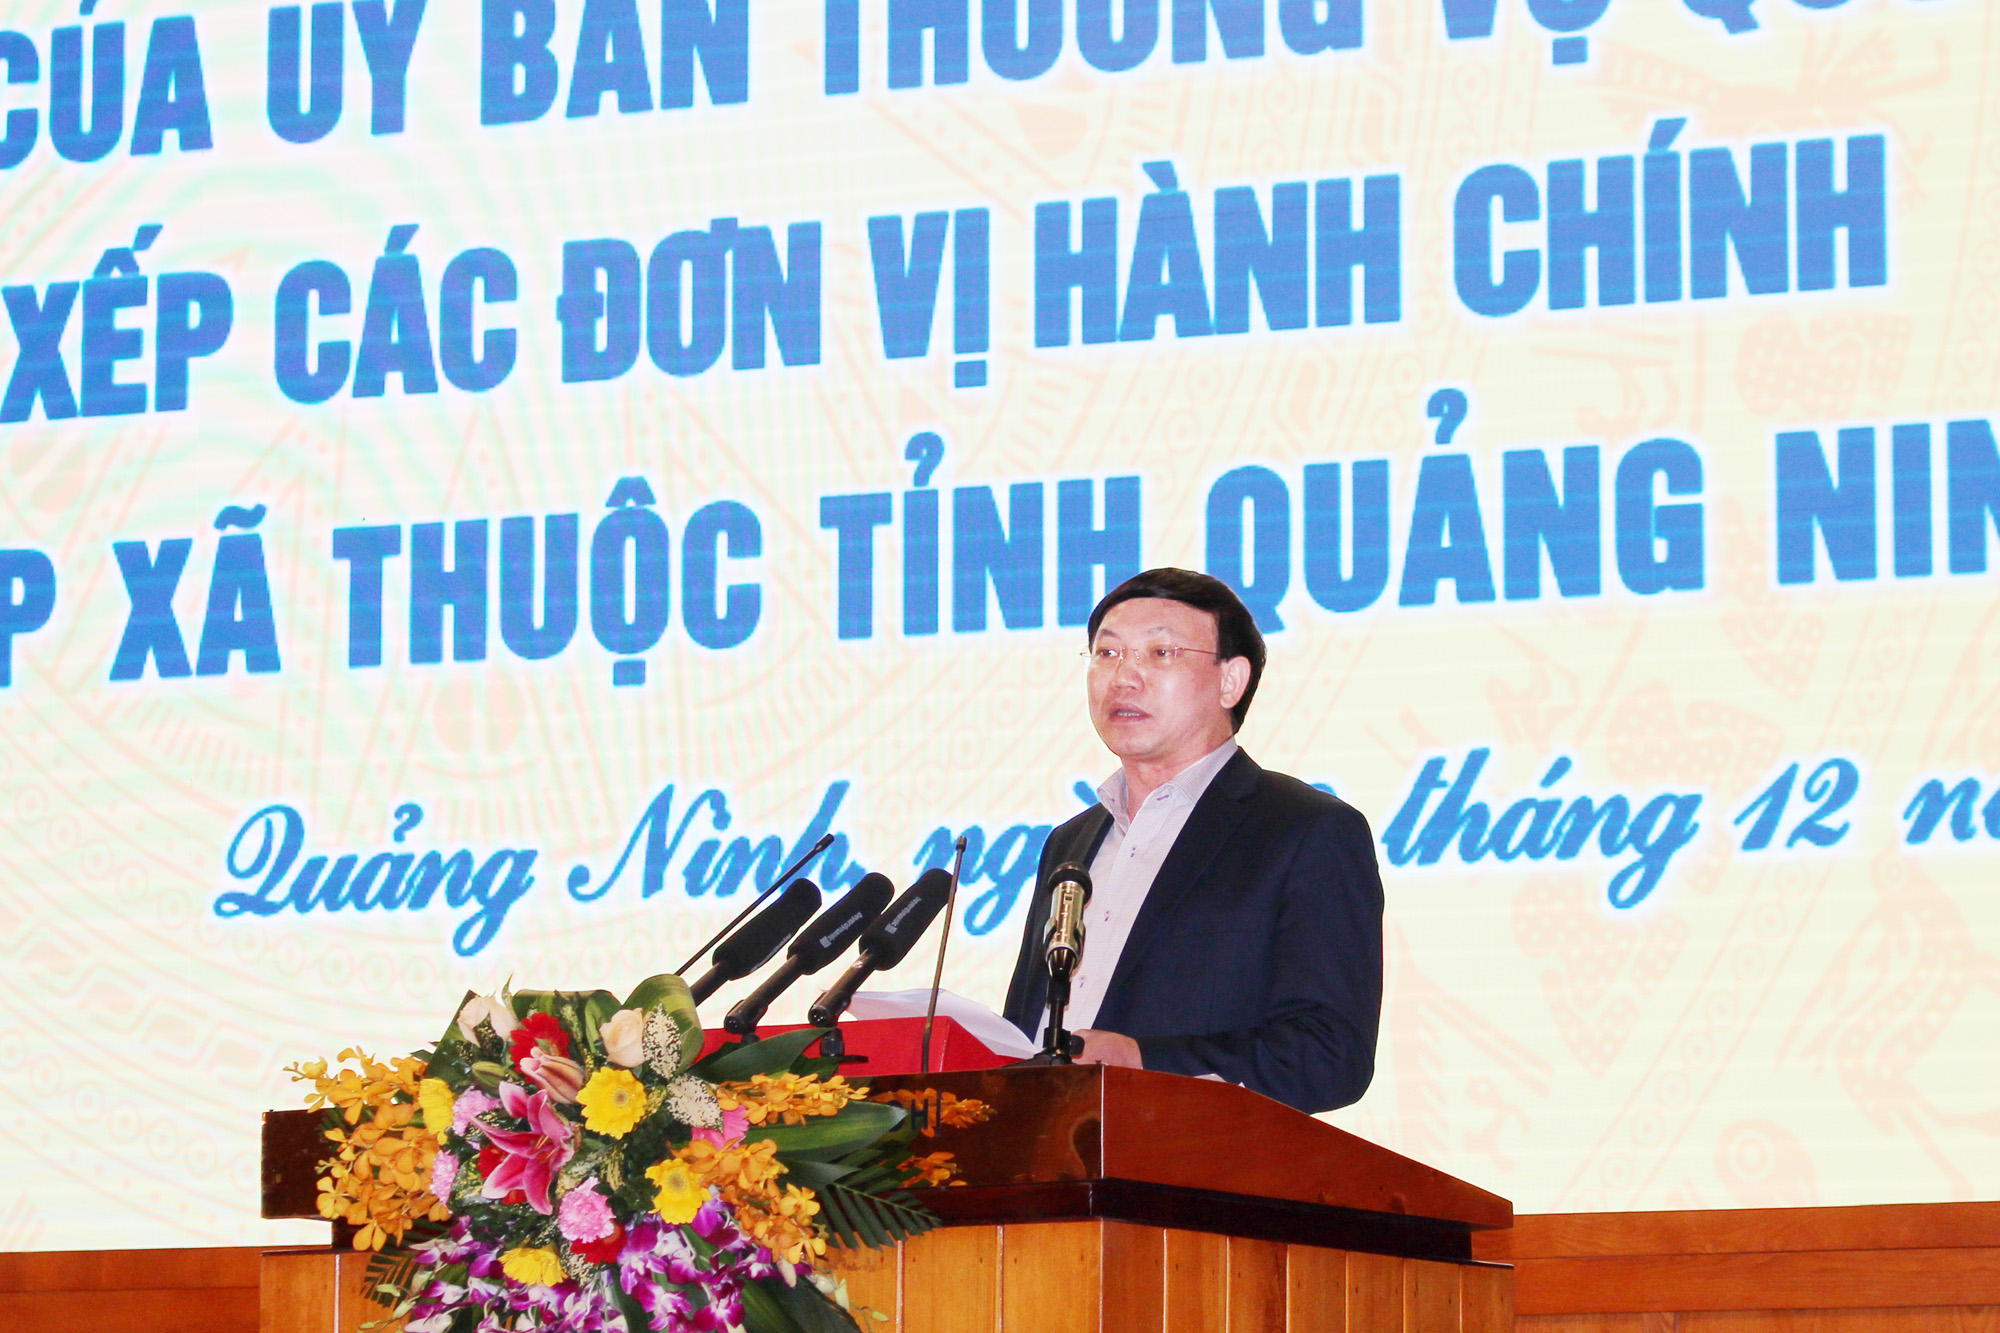 Đồng chí Nguyễn Xuân Ký, Bí thư Tỉnh ủy, Chủ tịch HĐND tỉnh, phát biểu chị đạo tại hội nghị.